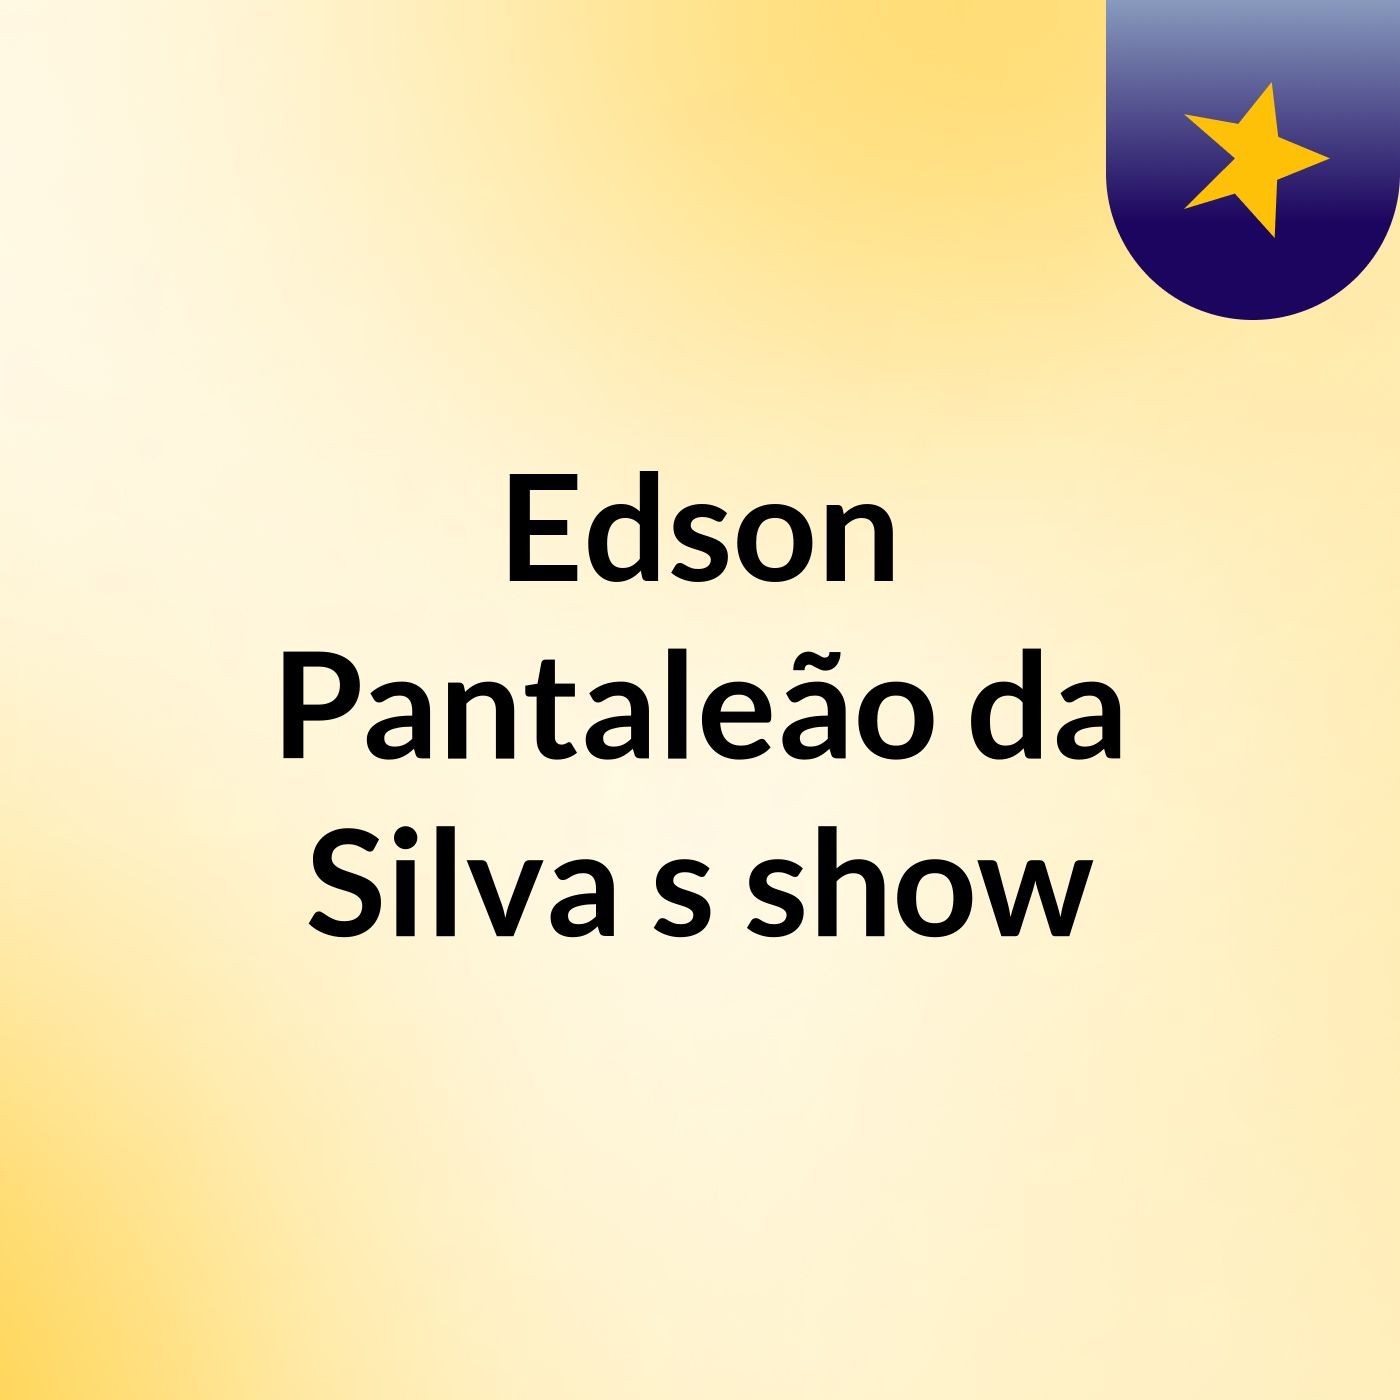 Edson Pantaleão da Silva's show